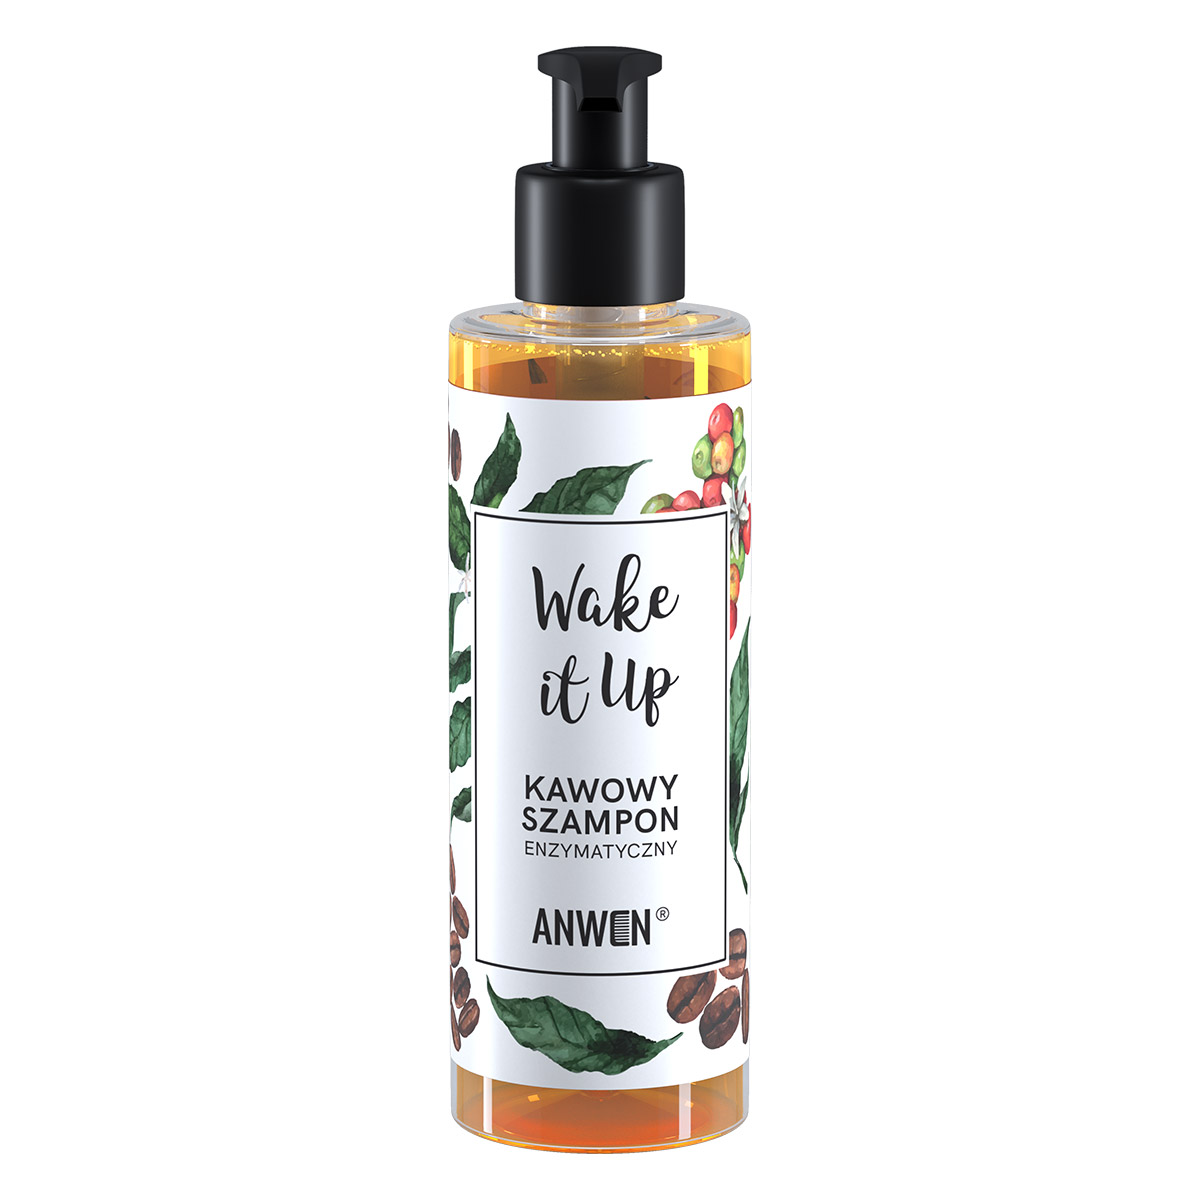 Anwen Anwen Wake It Up enzymatyczny szampon kawowy 200ml